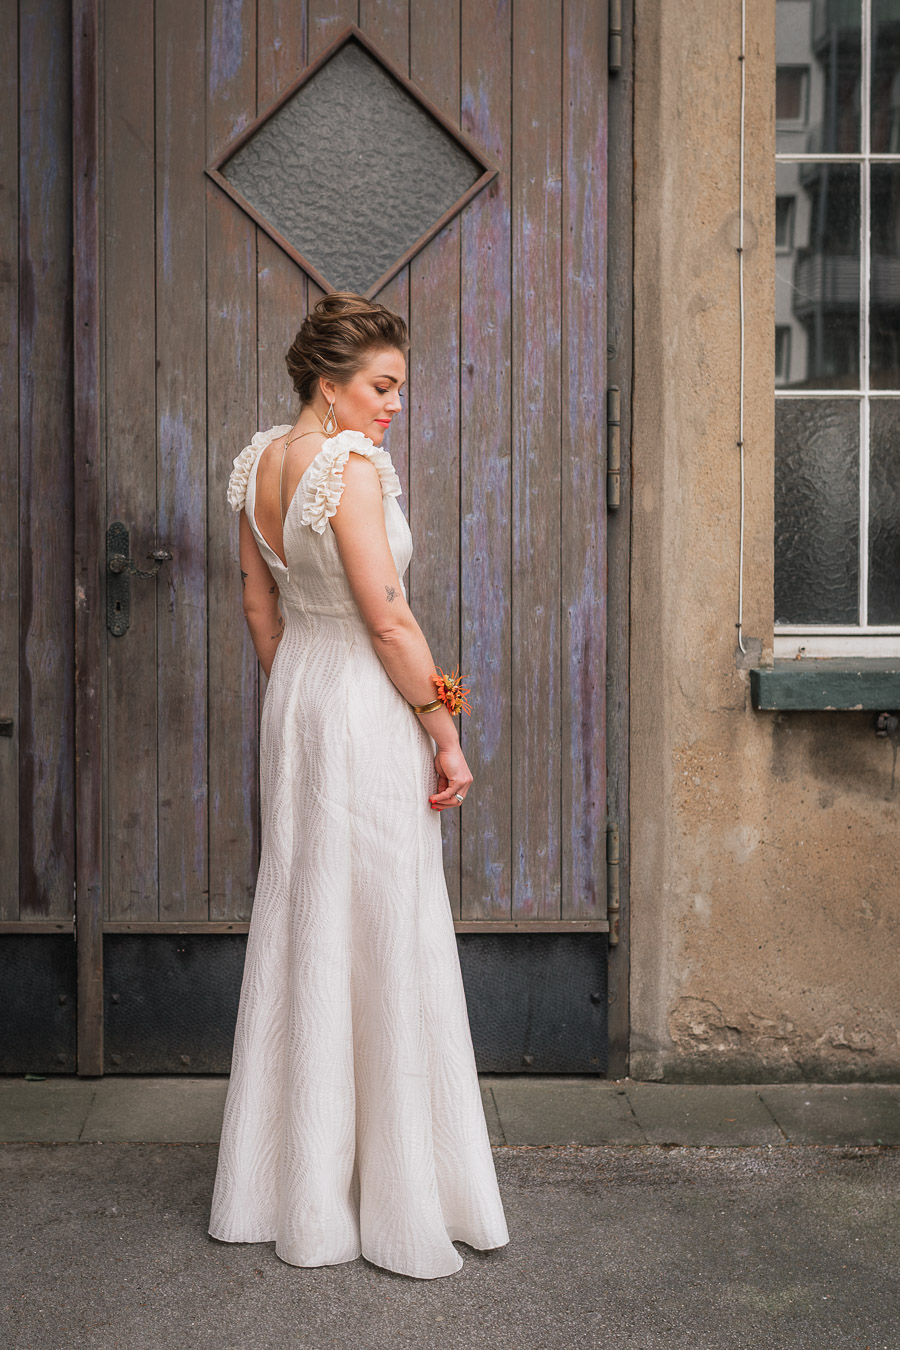 Bube Dame Herz Tiny Wedding im Kunstatelier-Brautkleid